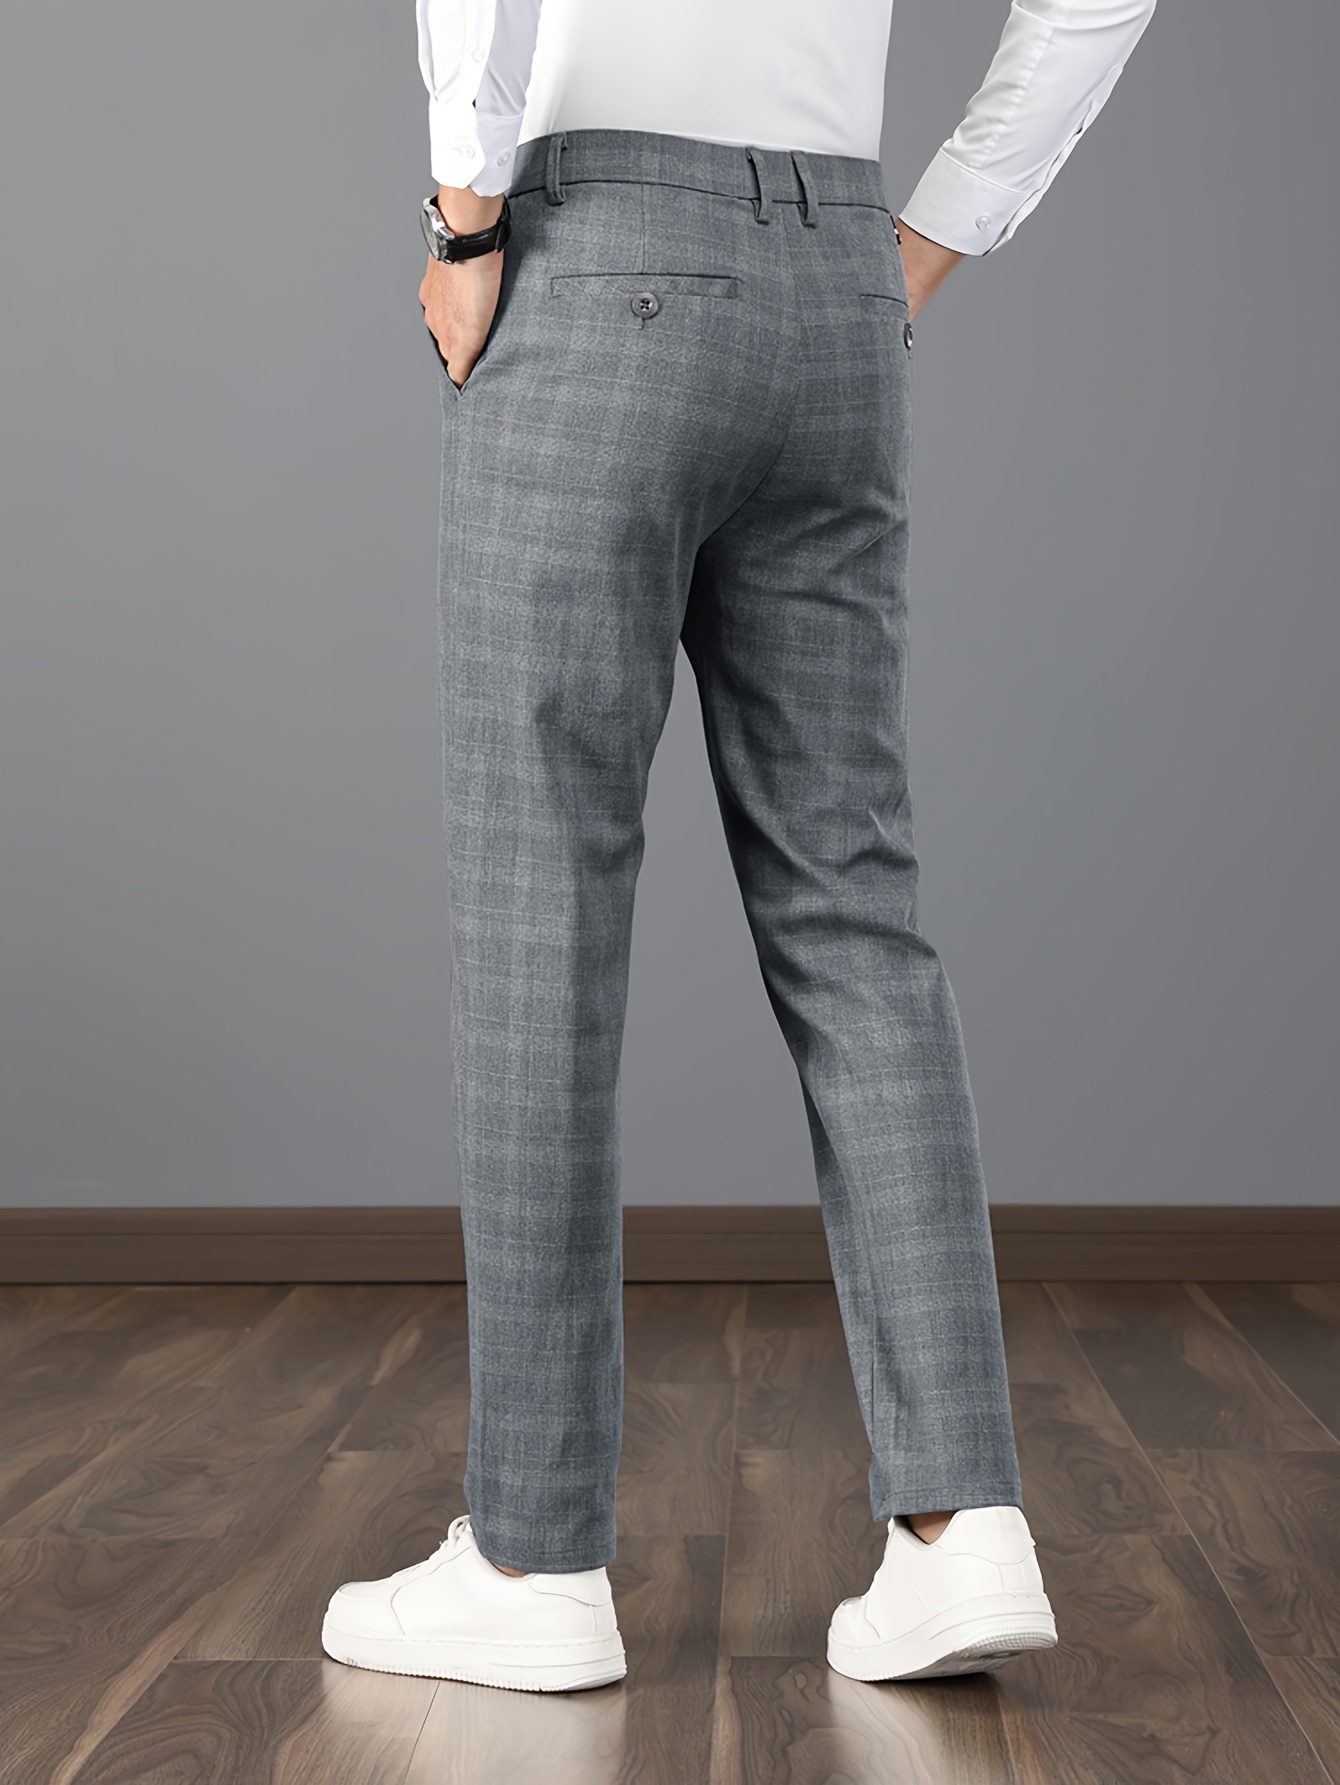 Elegantes Pantalones De Cuadros, De Vestir Casuales Para Hombres Con Un  Estilo Vintage Ligeramente Elástico